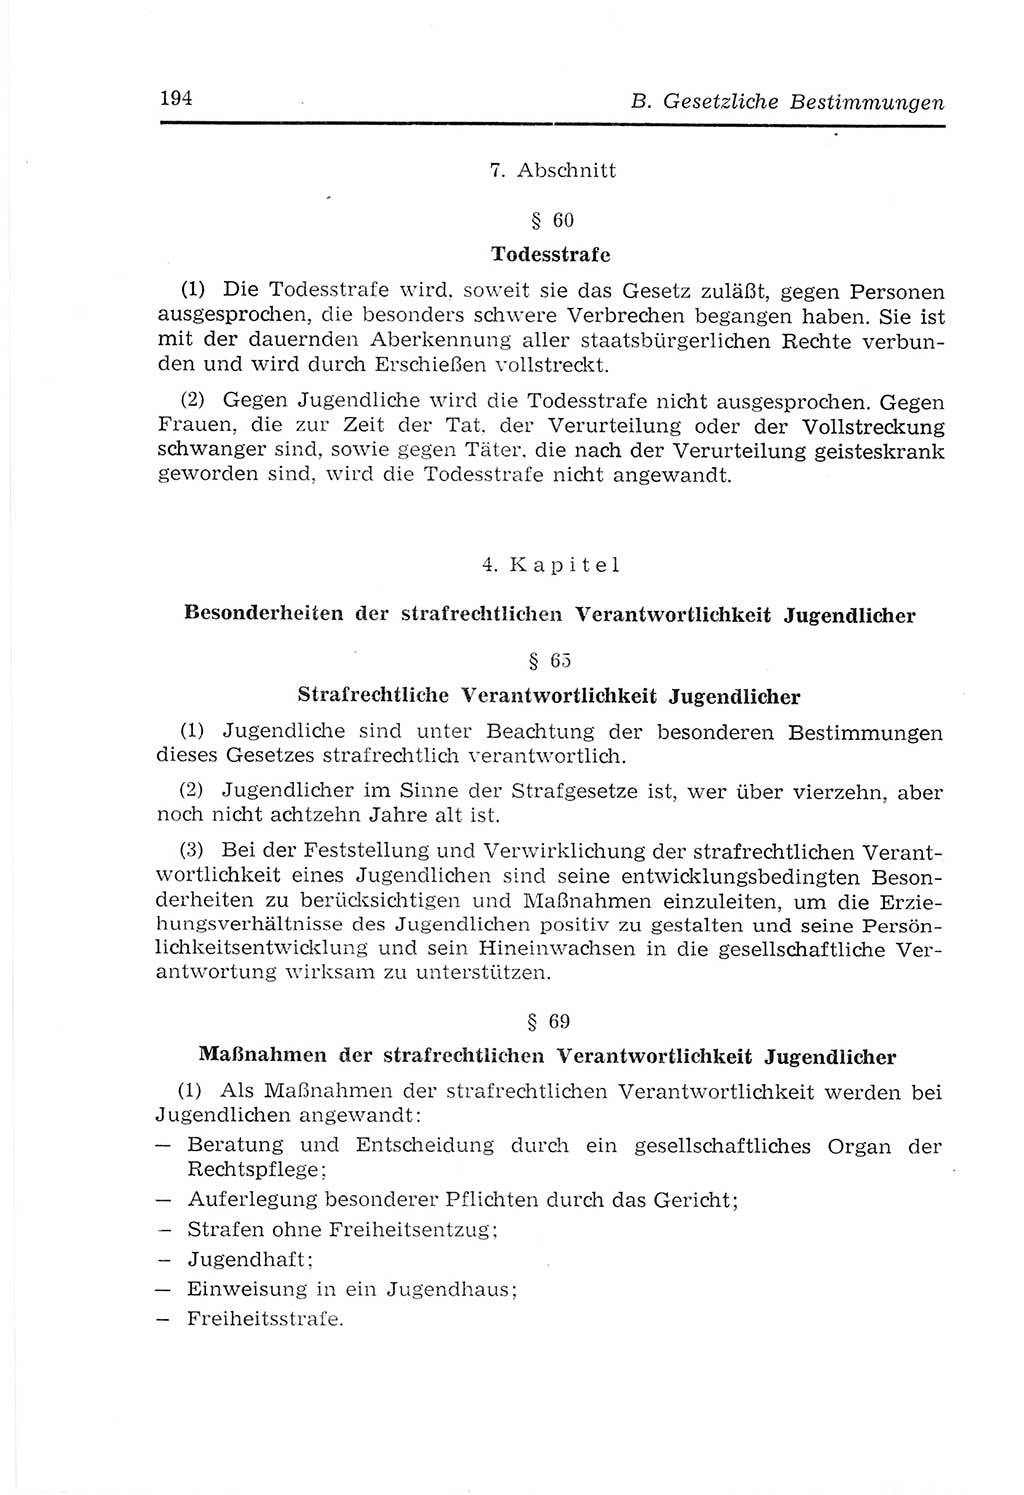 Strafvollzugs- und Wiedereingliederungsgesetz (SVWG) der Deutschen Demokratischen Republik (DDR) 1968, Seite 194 (SVWG DDR 1968, S. 194)